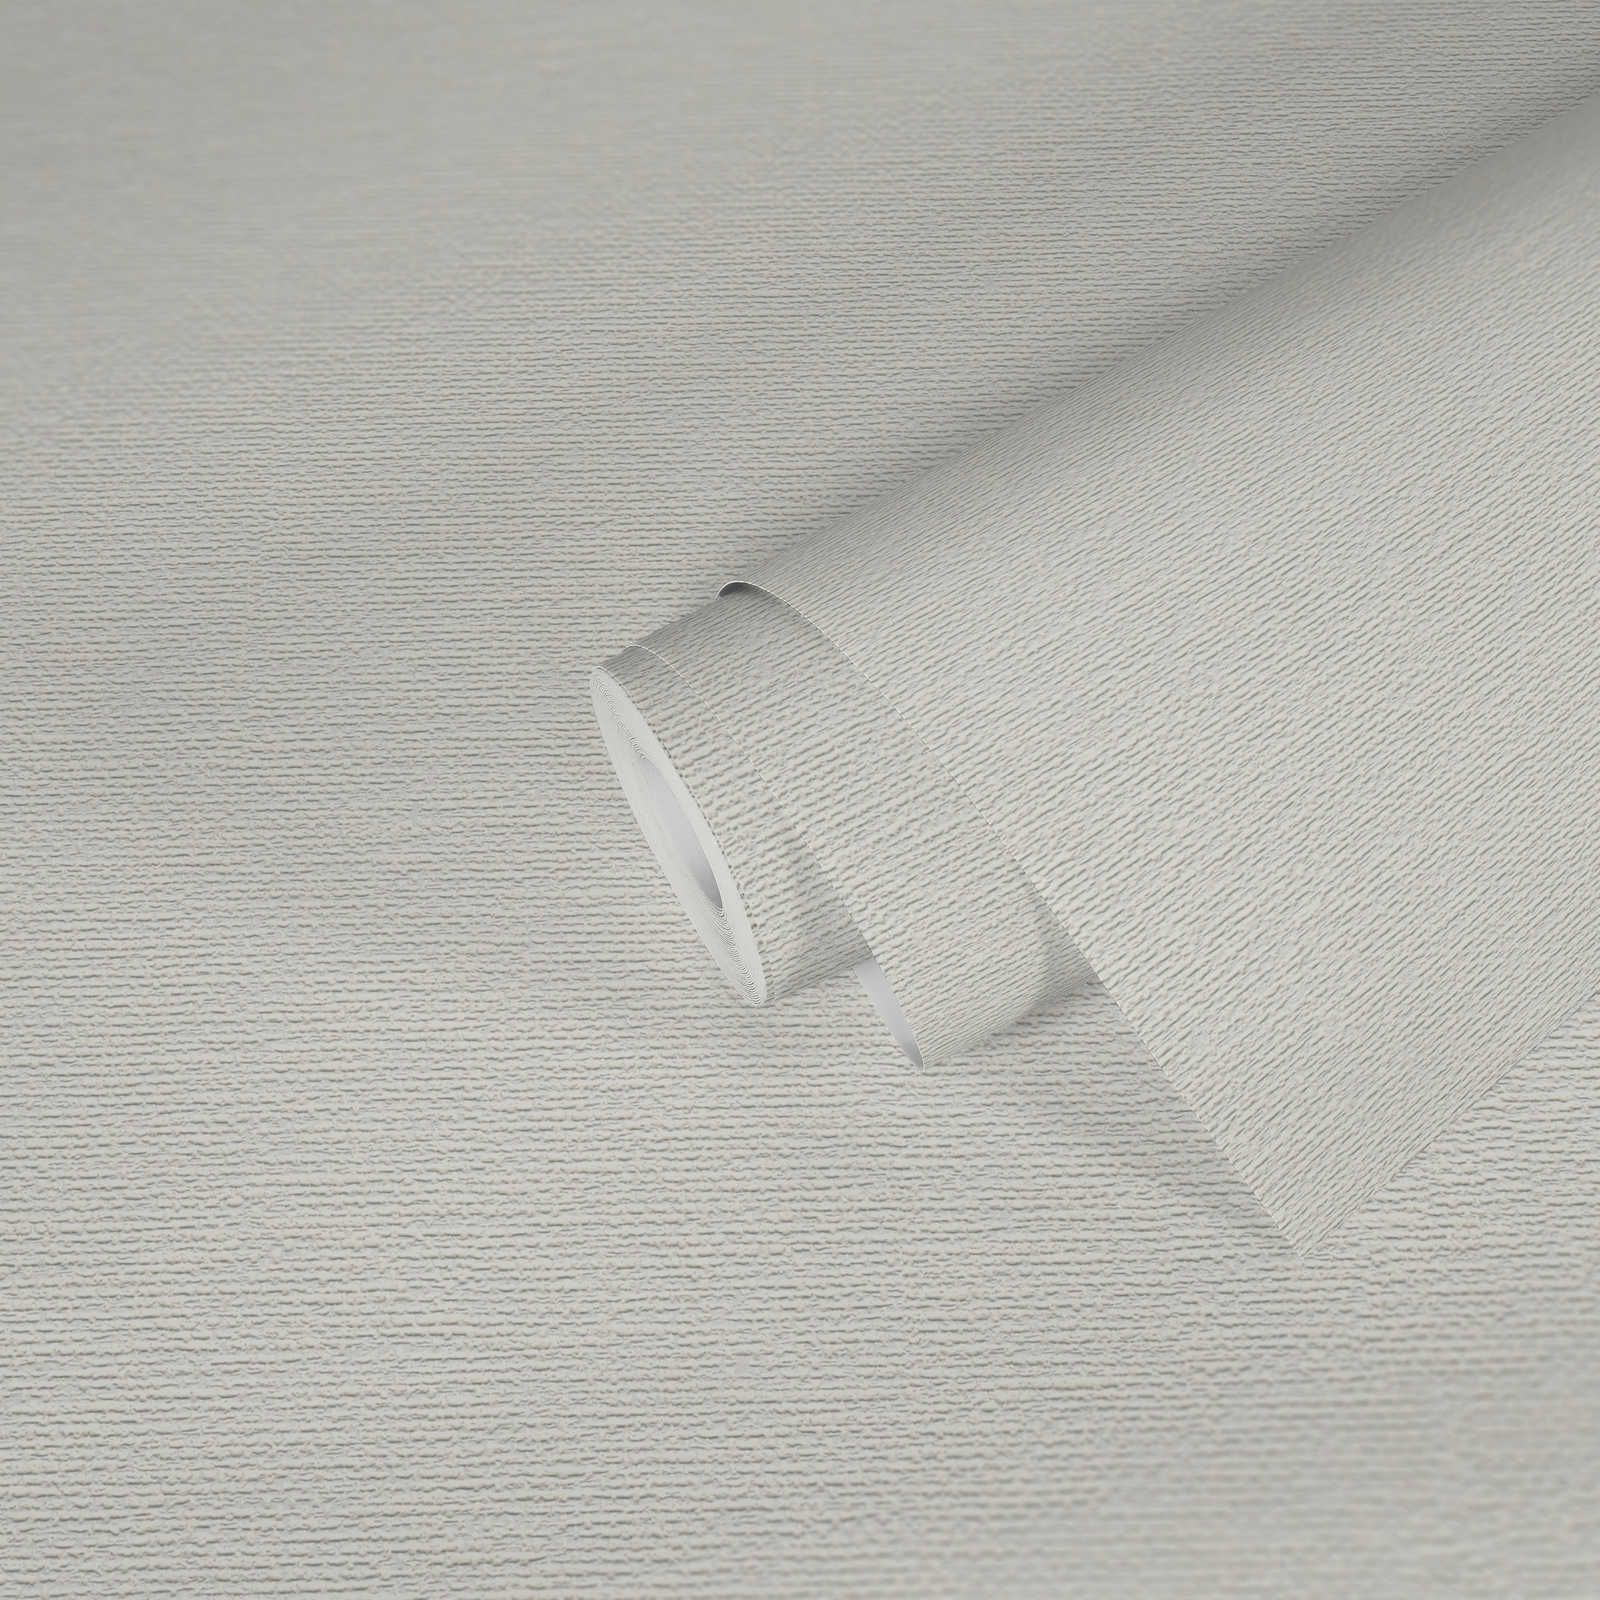             Carta da parati verniciabile in tessuto non tessuto a struttura grossa - bianco
        